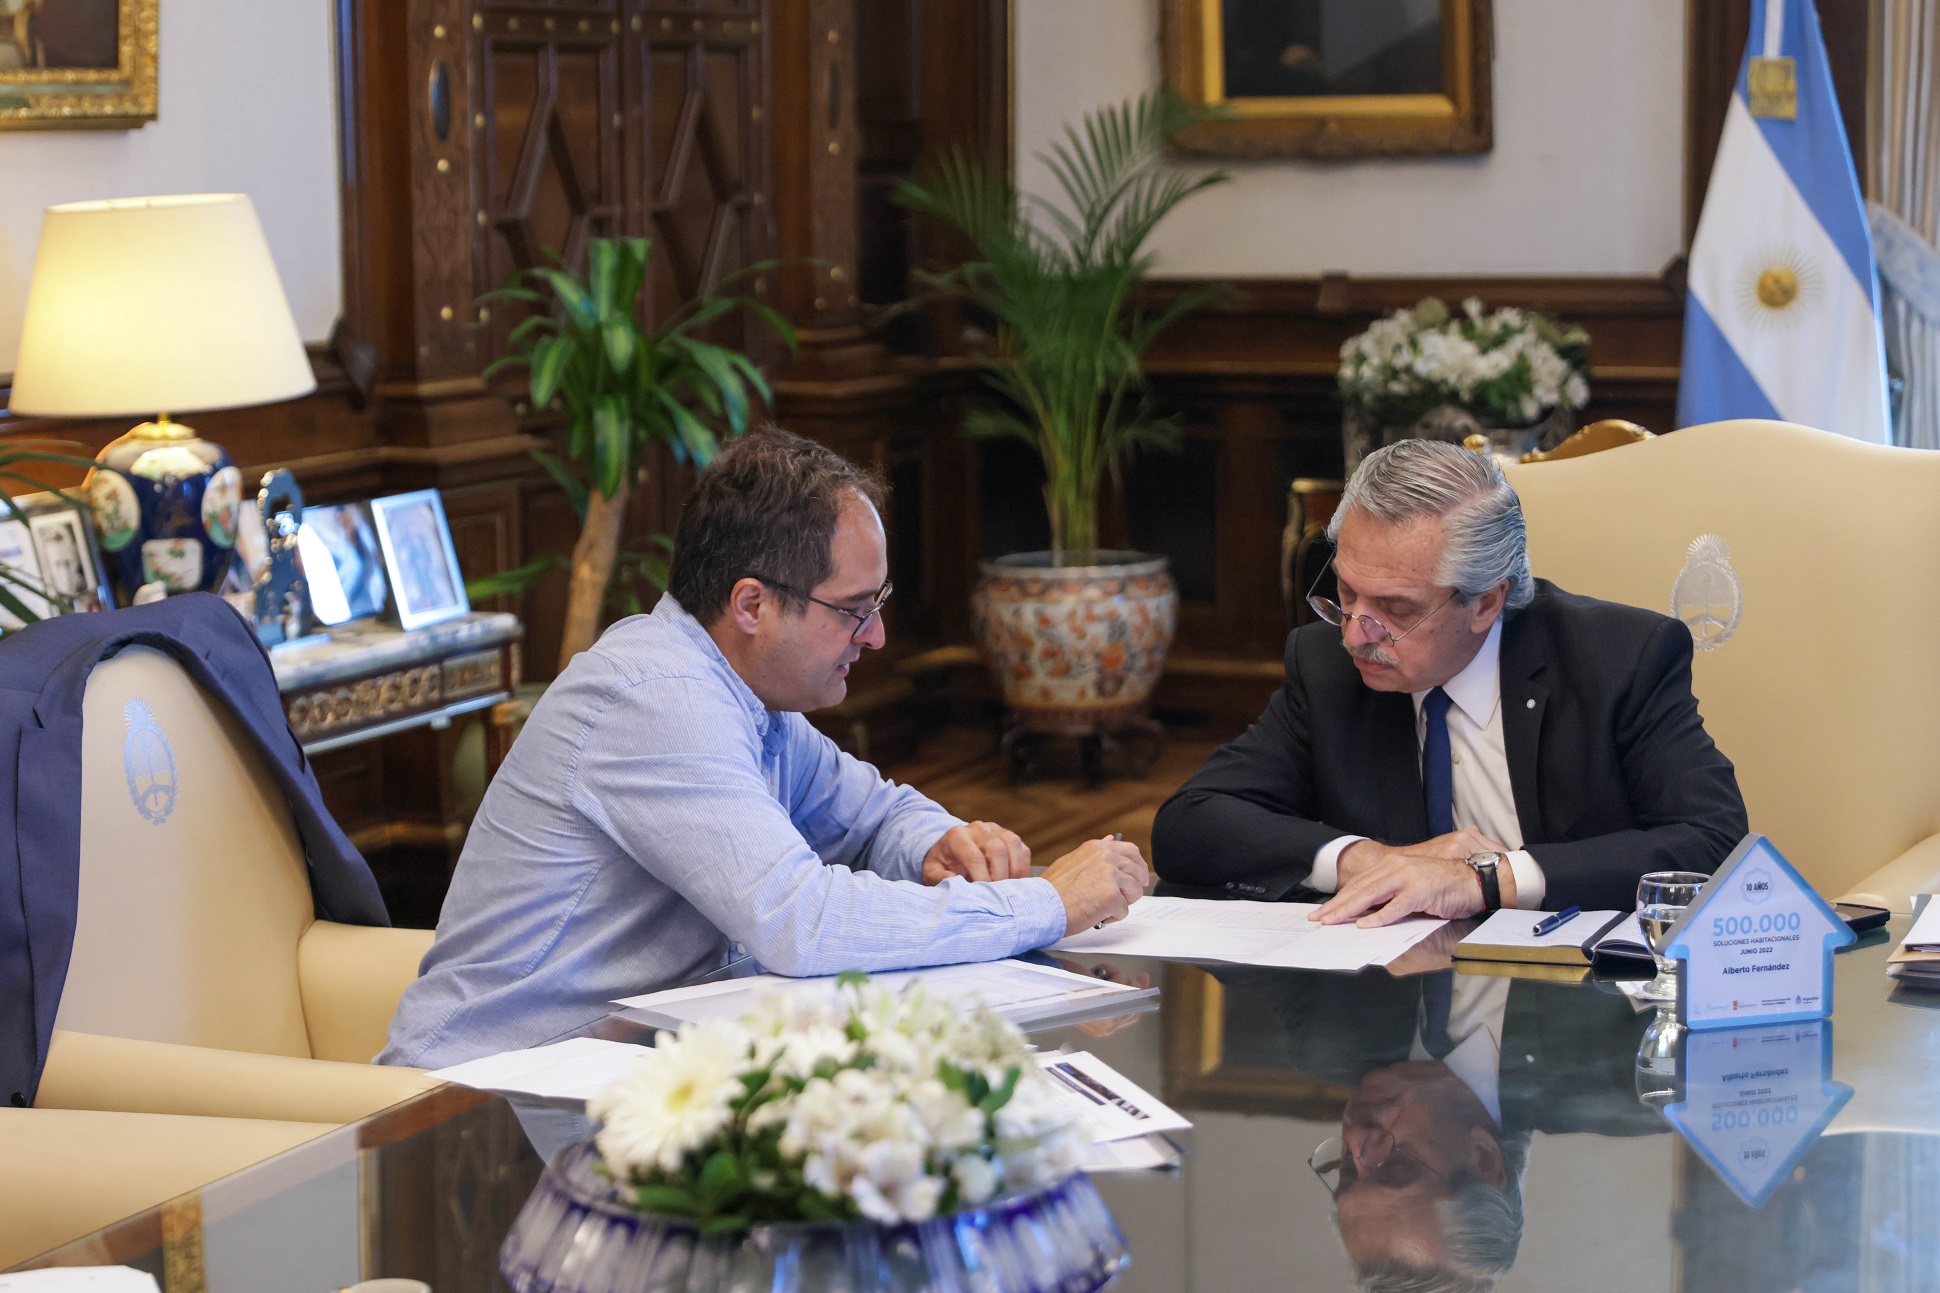 El presidente Alberto Fernández analizó con Maggiotti la construcción y entrega de viviendas en todo el país